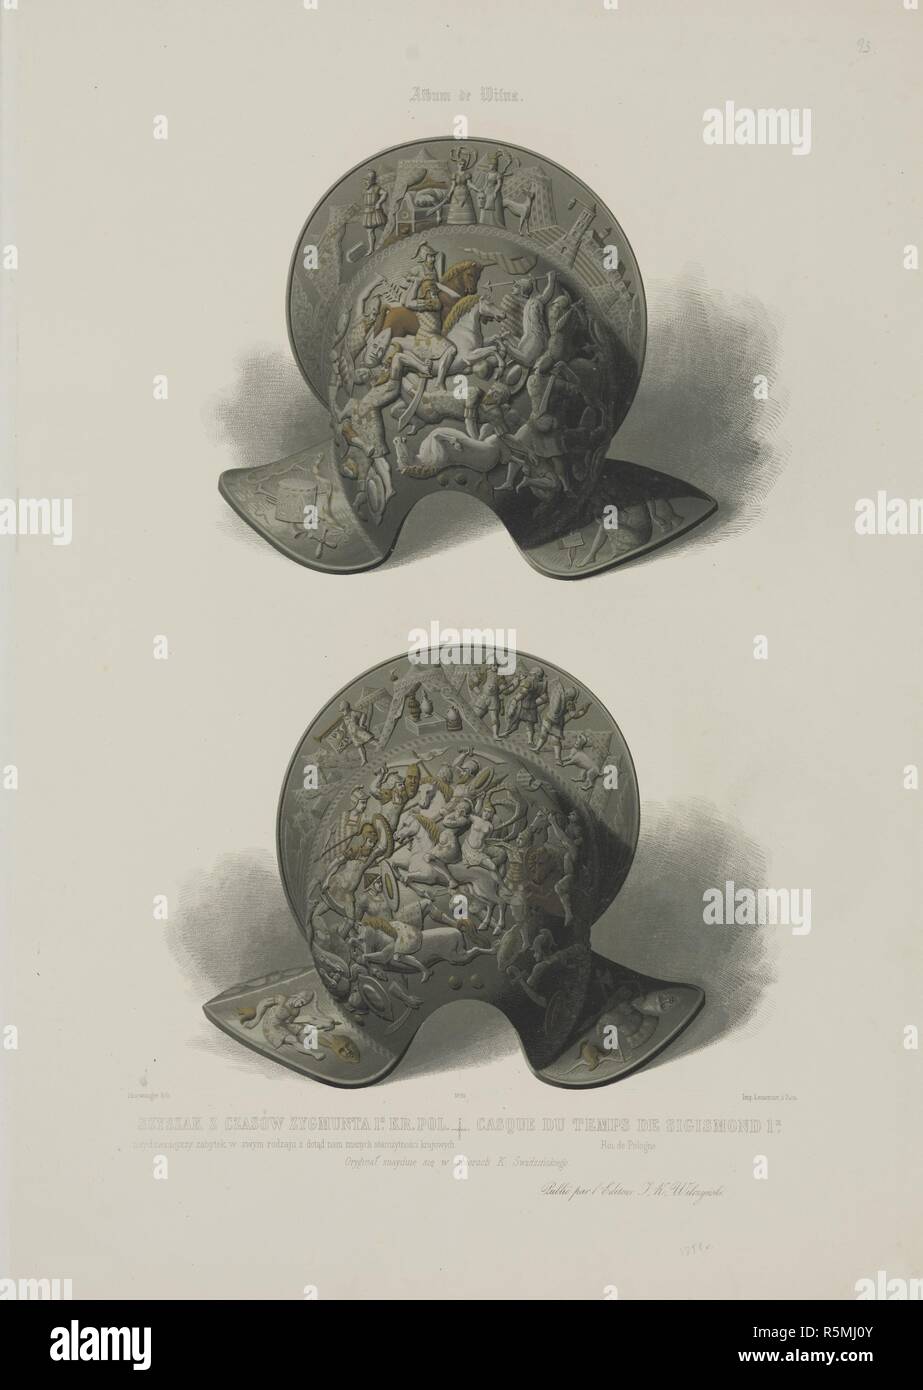 Casque de pot le roi Sigismond I de Pologne. Musée : collection privée. Auteur : Thurwanger, Martin T. Banque D'Images